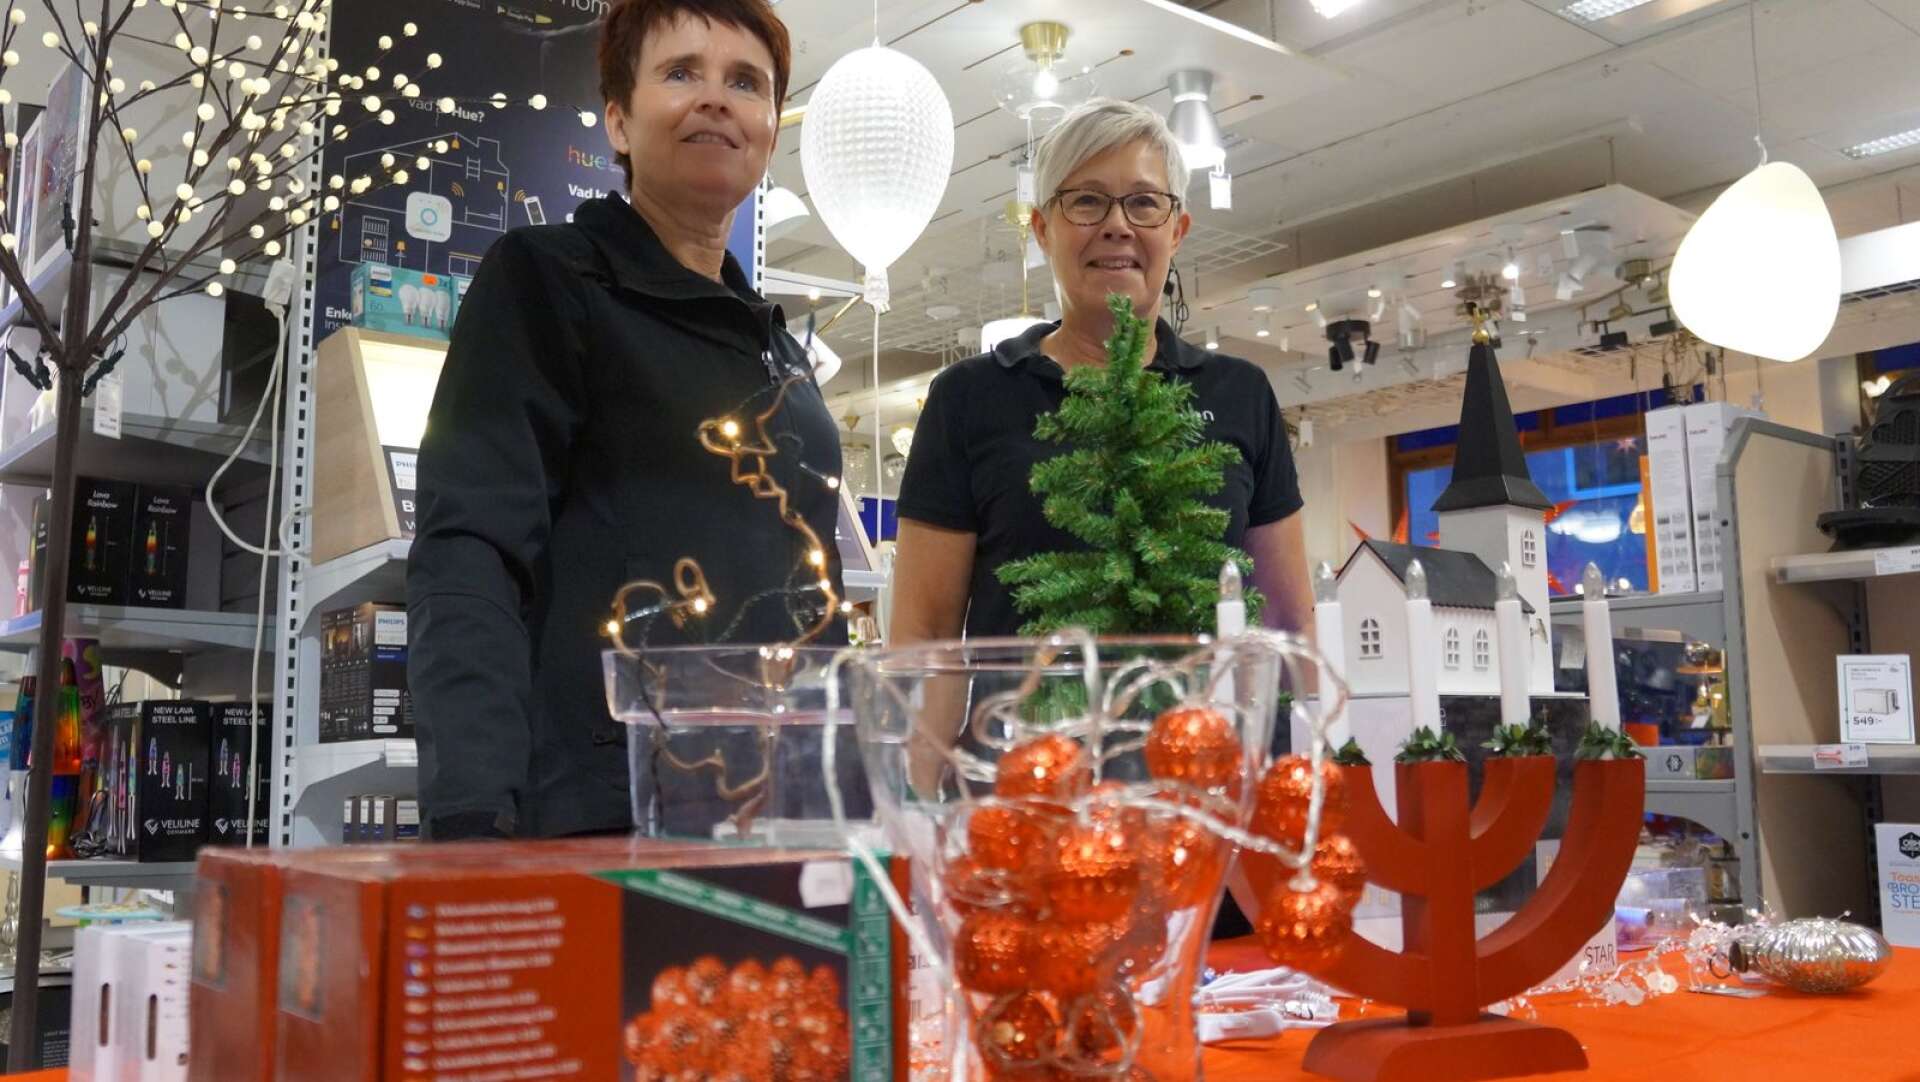 Anki Gustafsson och Ann-Liss Gustafsson på Elon i Åmål konstaterar  att suget efter julpynt har varit större än vanligt i år.